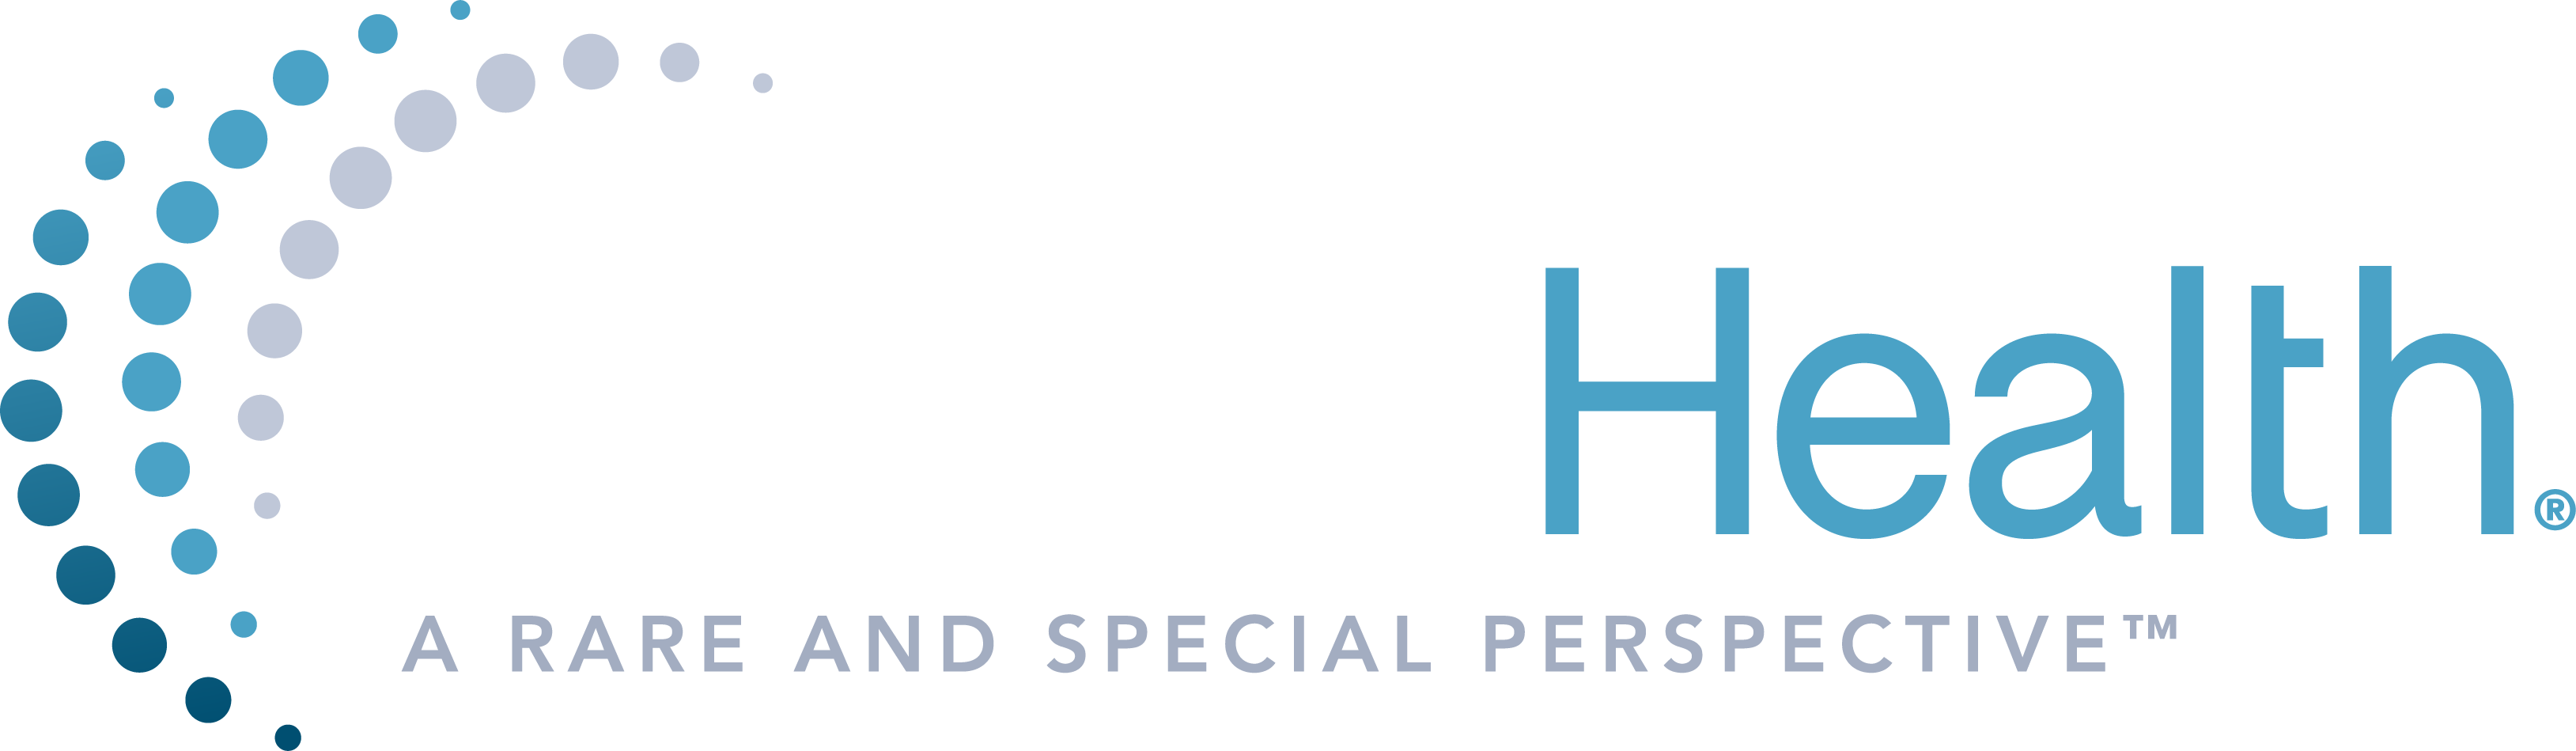 AscellaHealth logo